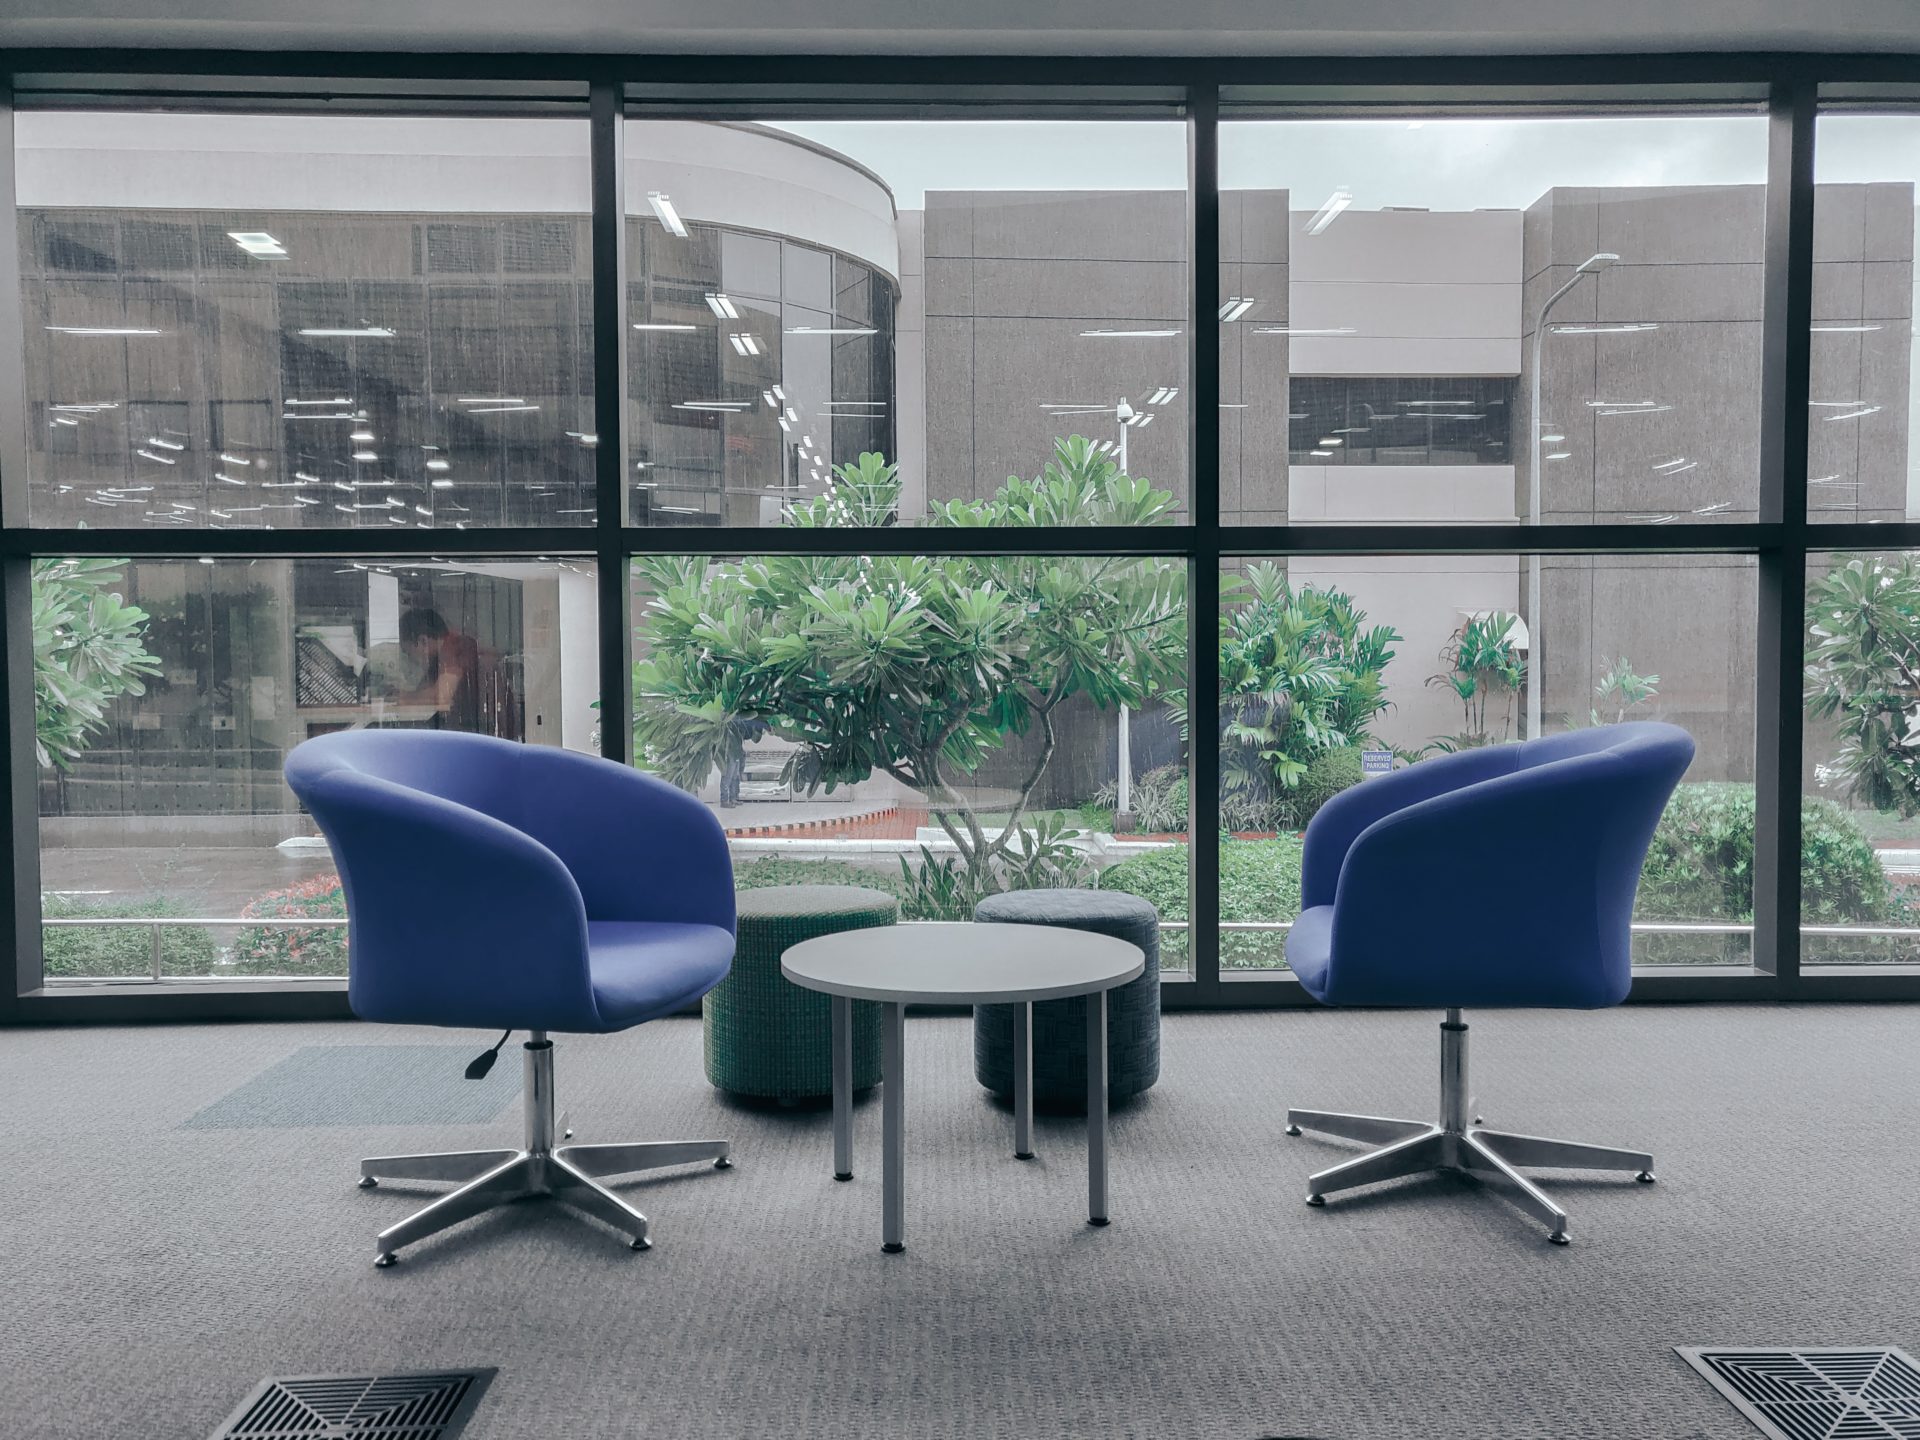 2 fauteuils bleus autour d'une table basse, devant une baie vitrée donnant sur les espaces verts d'une entreprise